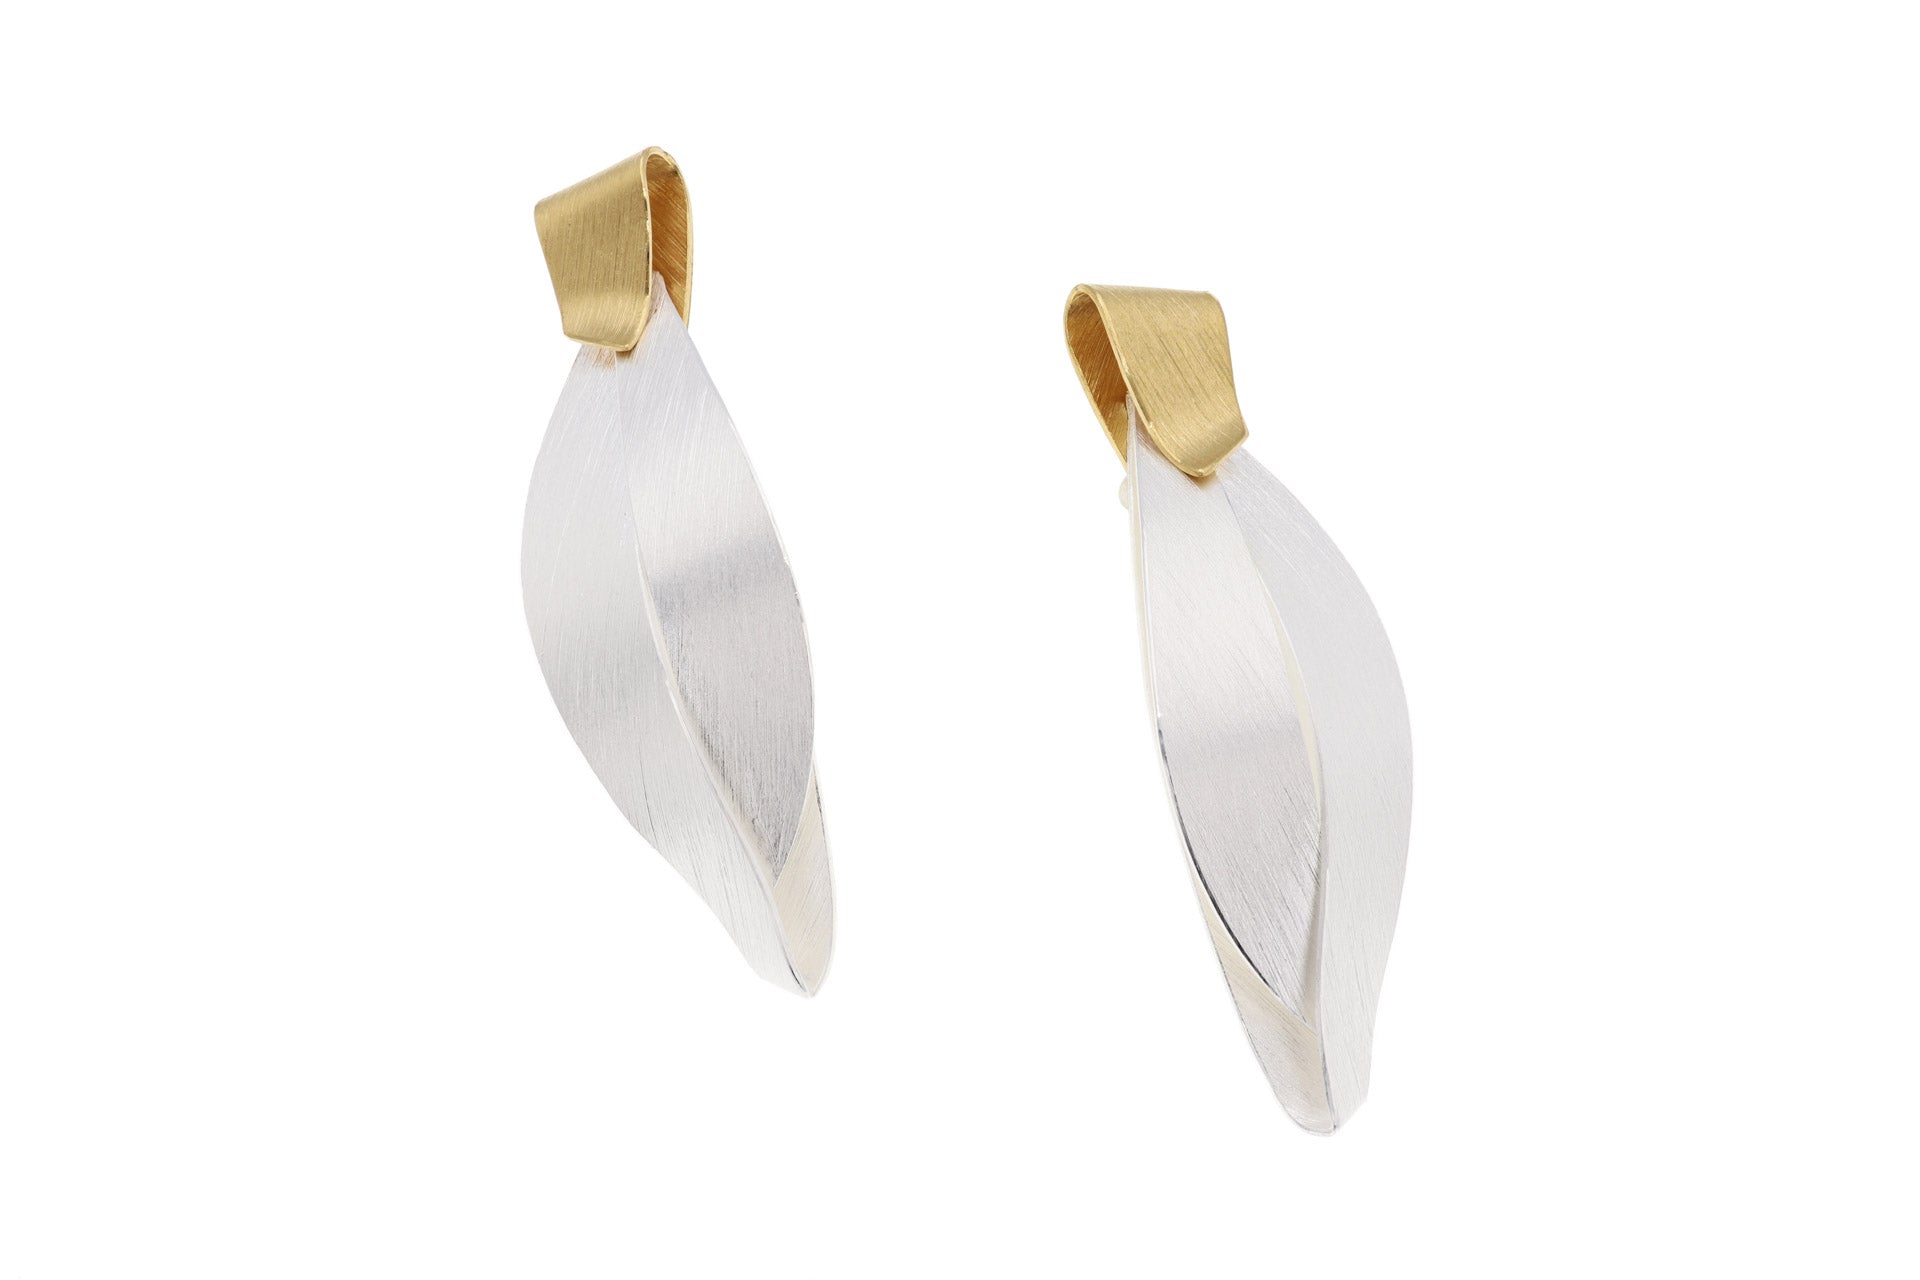 Silver Flowing Earrings - The Nancy Smillie Shop - Art, Jewellery & Designer Gifts Glasgow